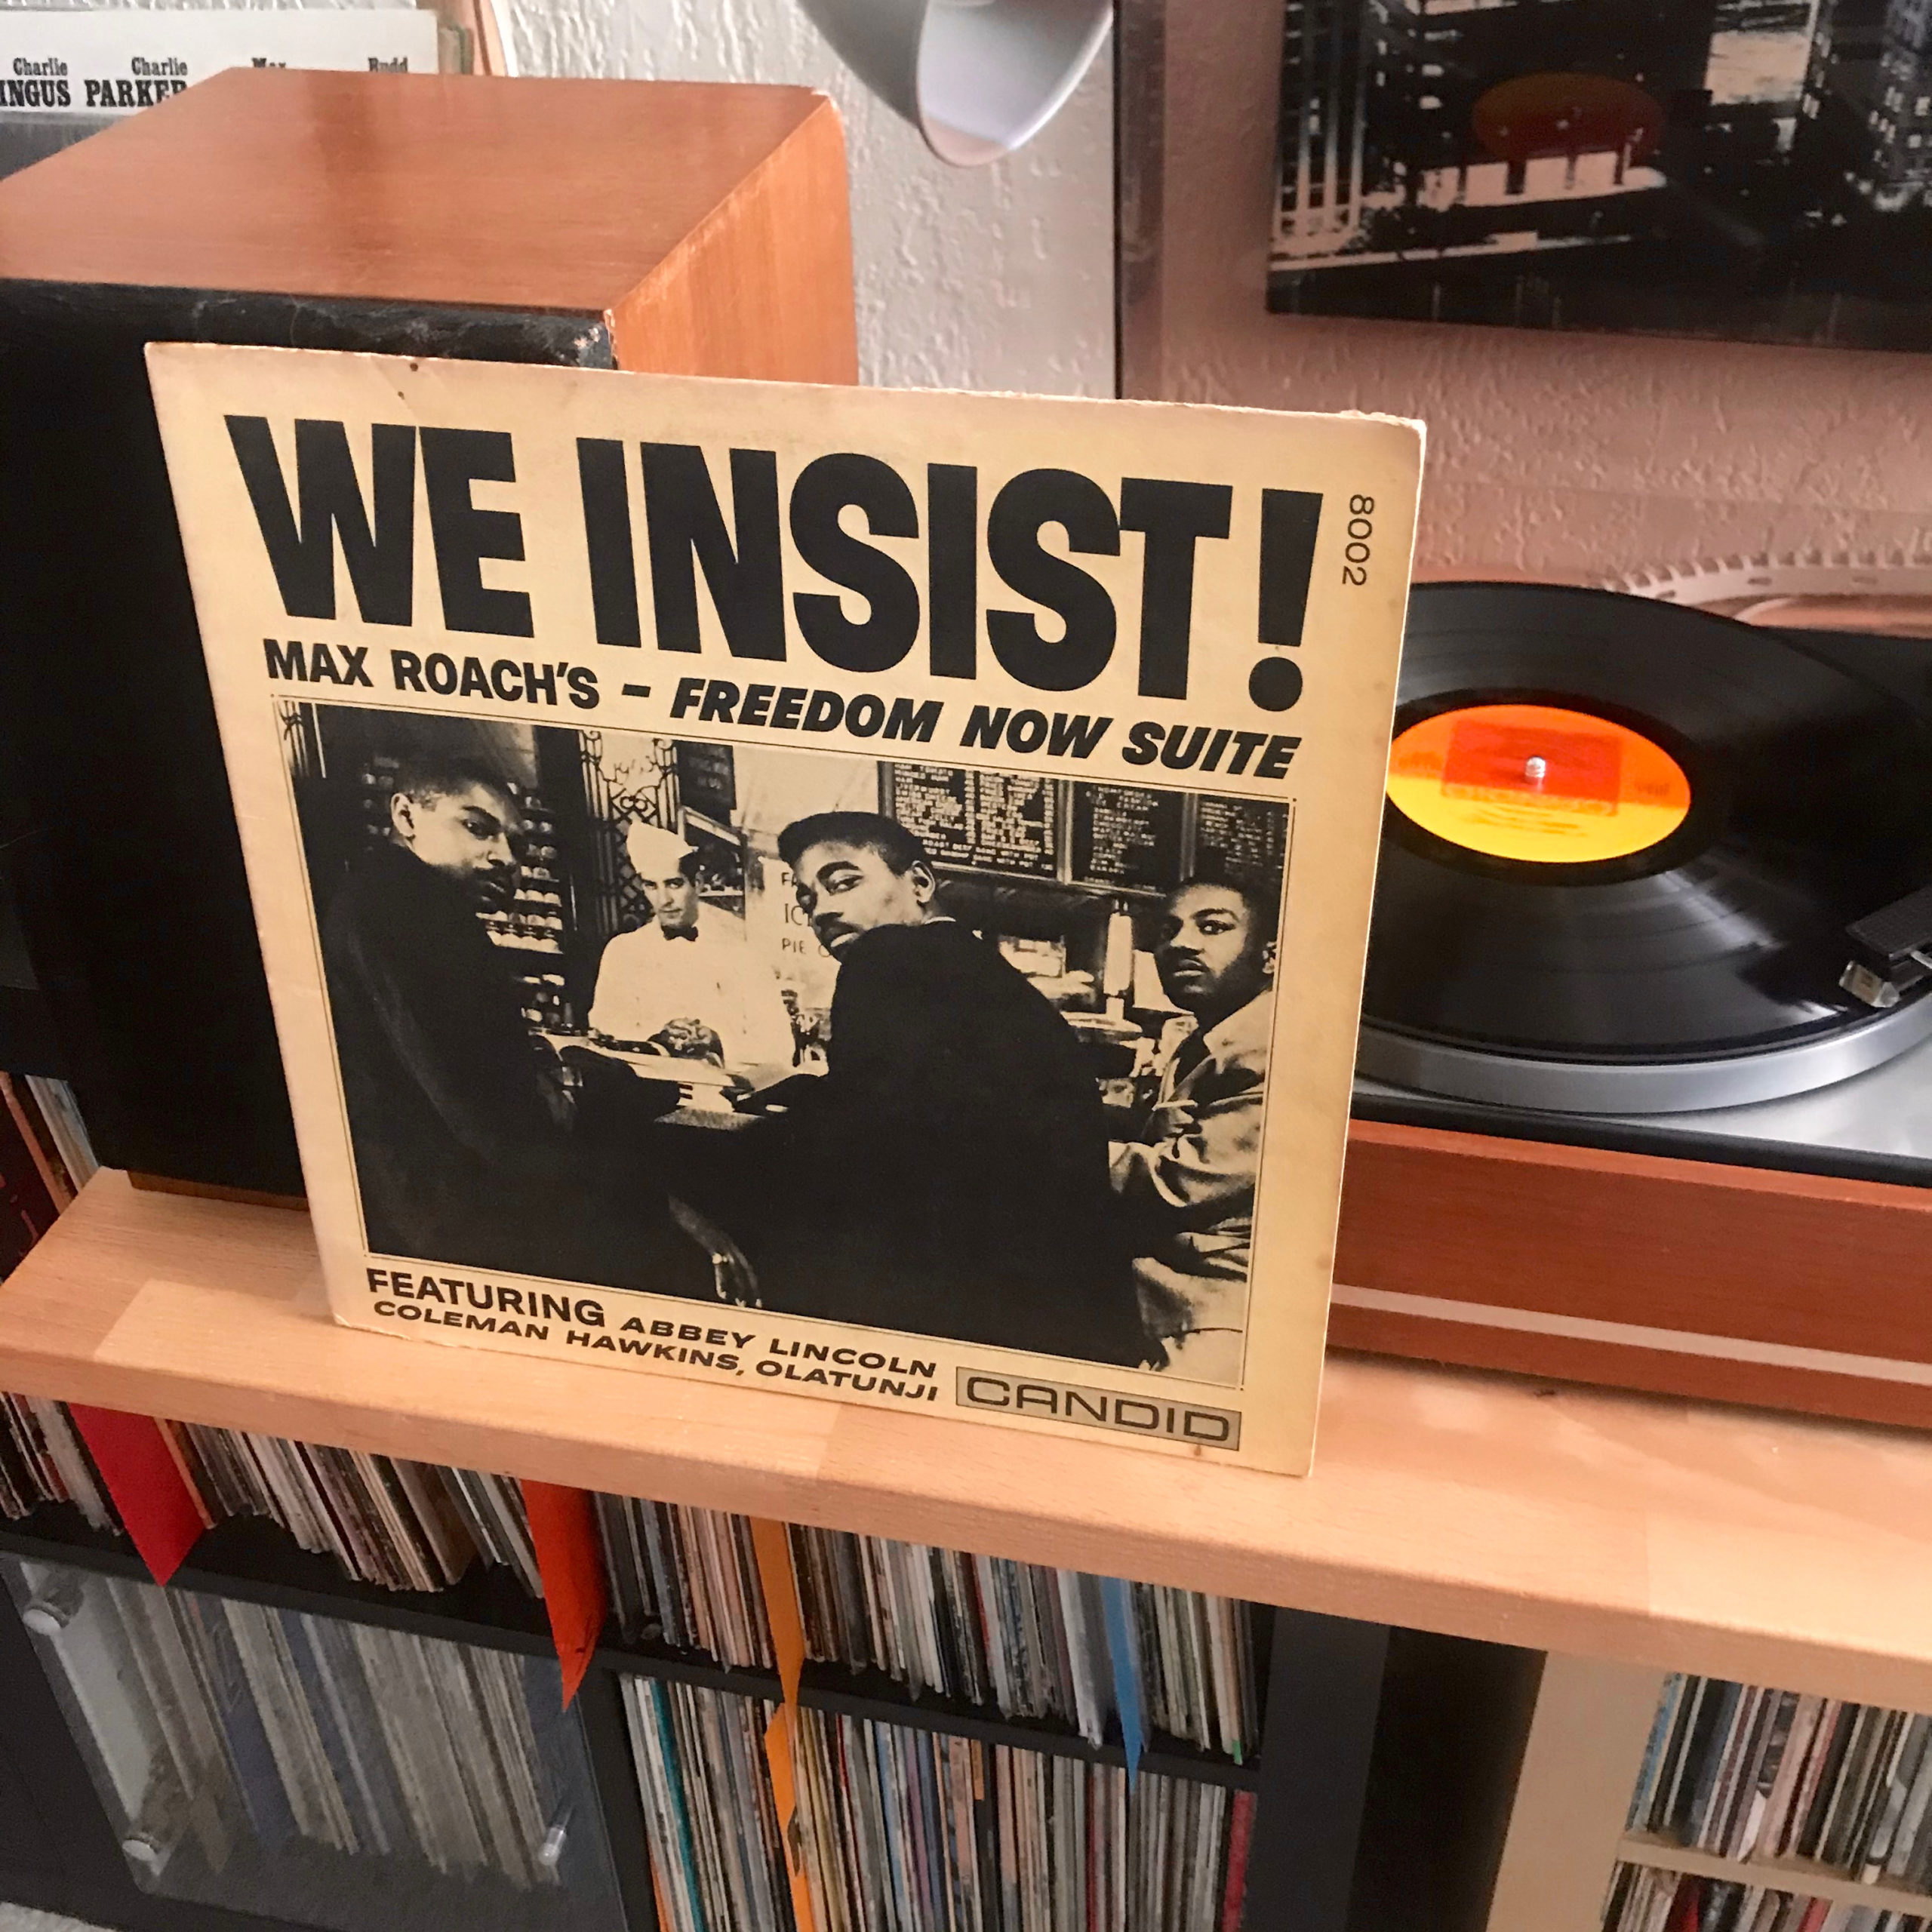 Jour 31 – Max Roach, We Insist!